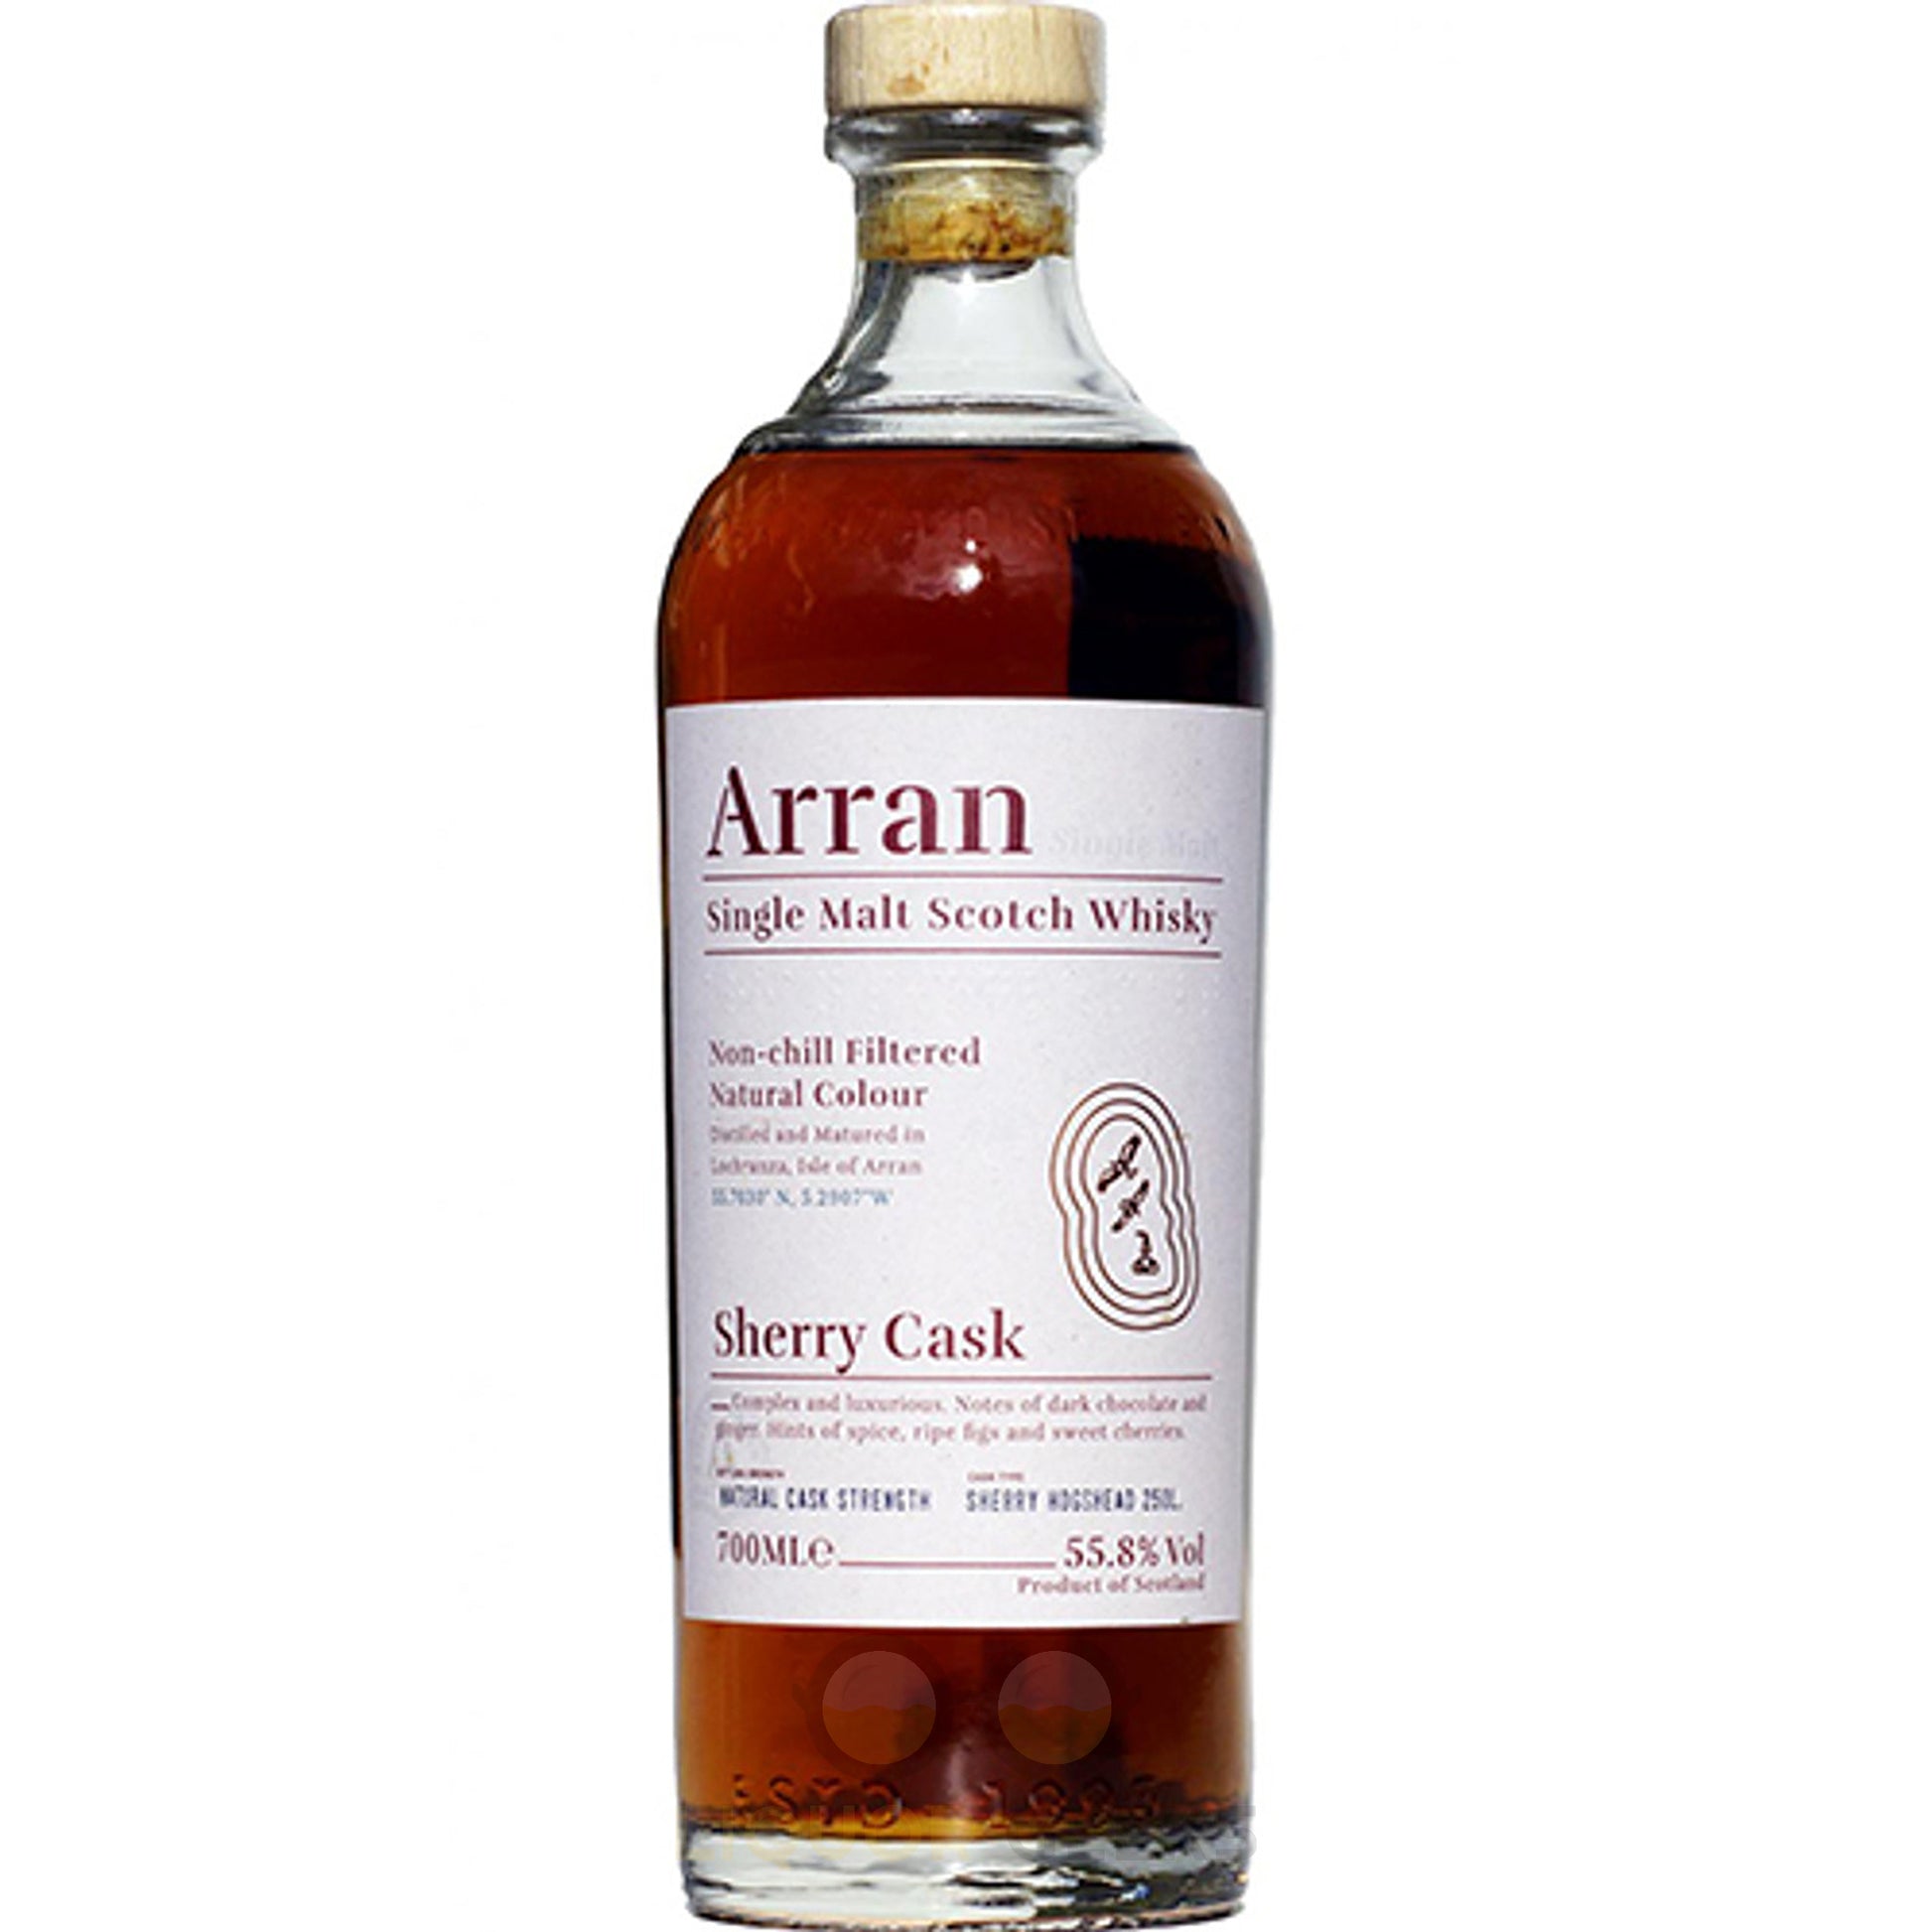 Arran Malt Single Malt Scotch Sherry Cask - Liquor Geeks